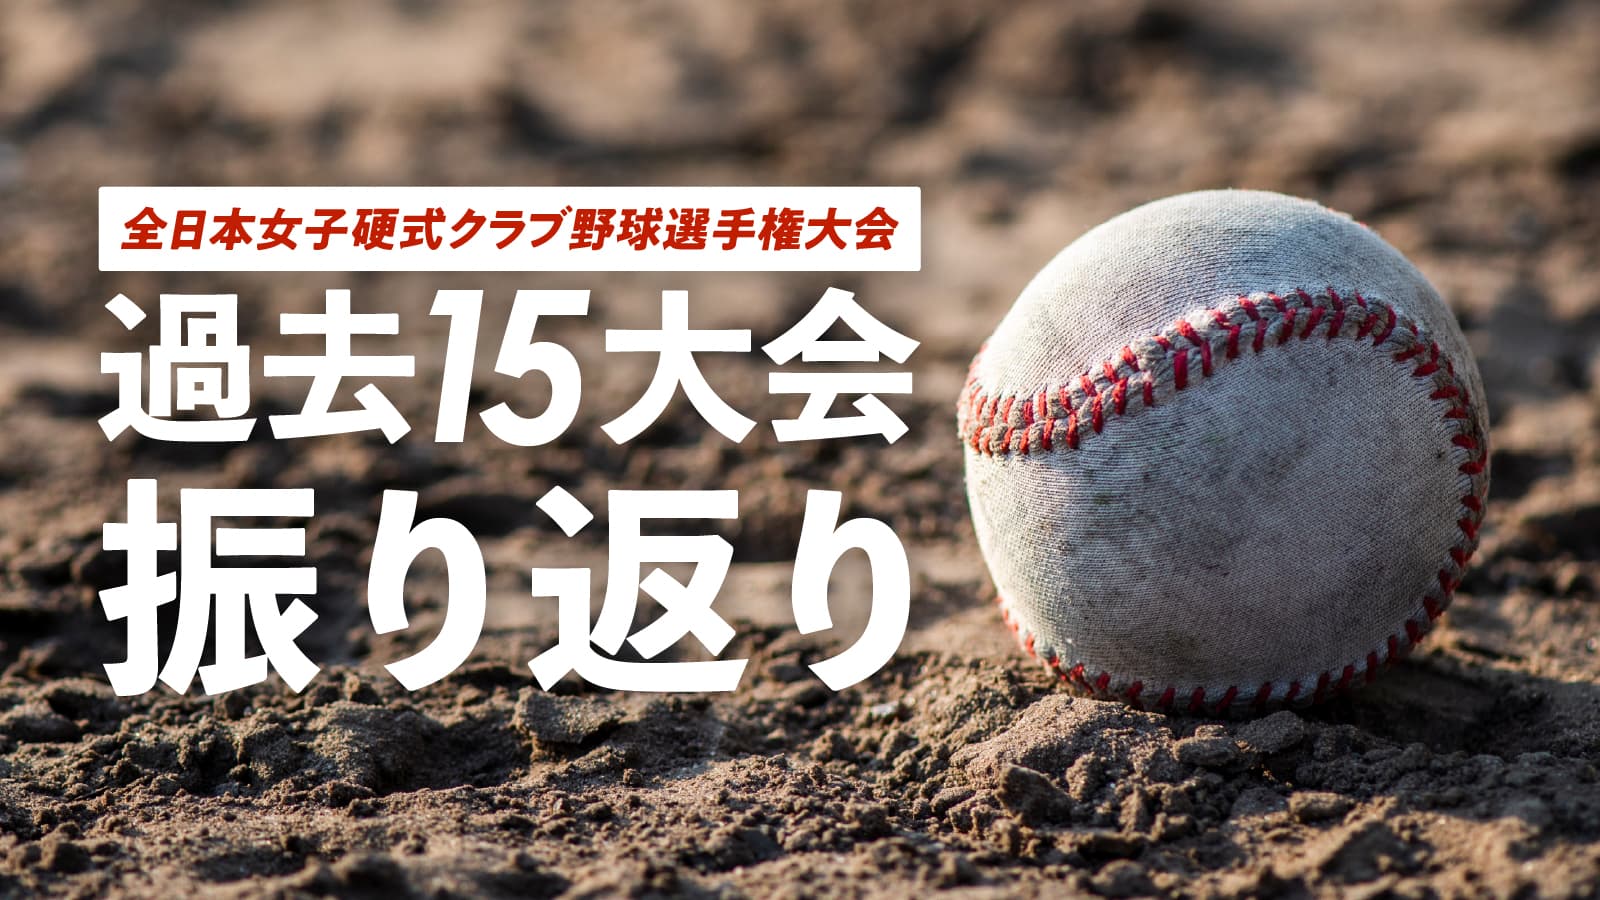 第16回全日本女子硬式クラブ野球選手権大会 直前情報 過去15回大会振り返り